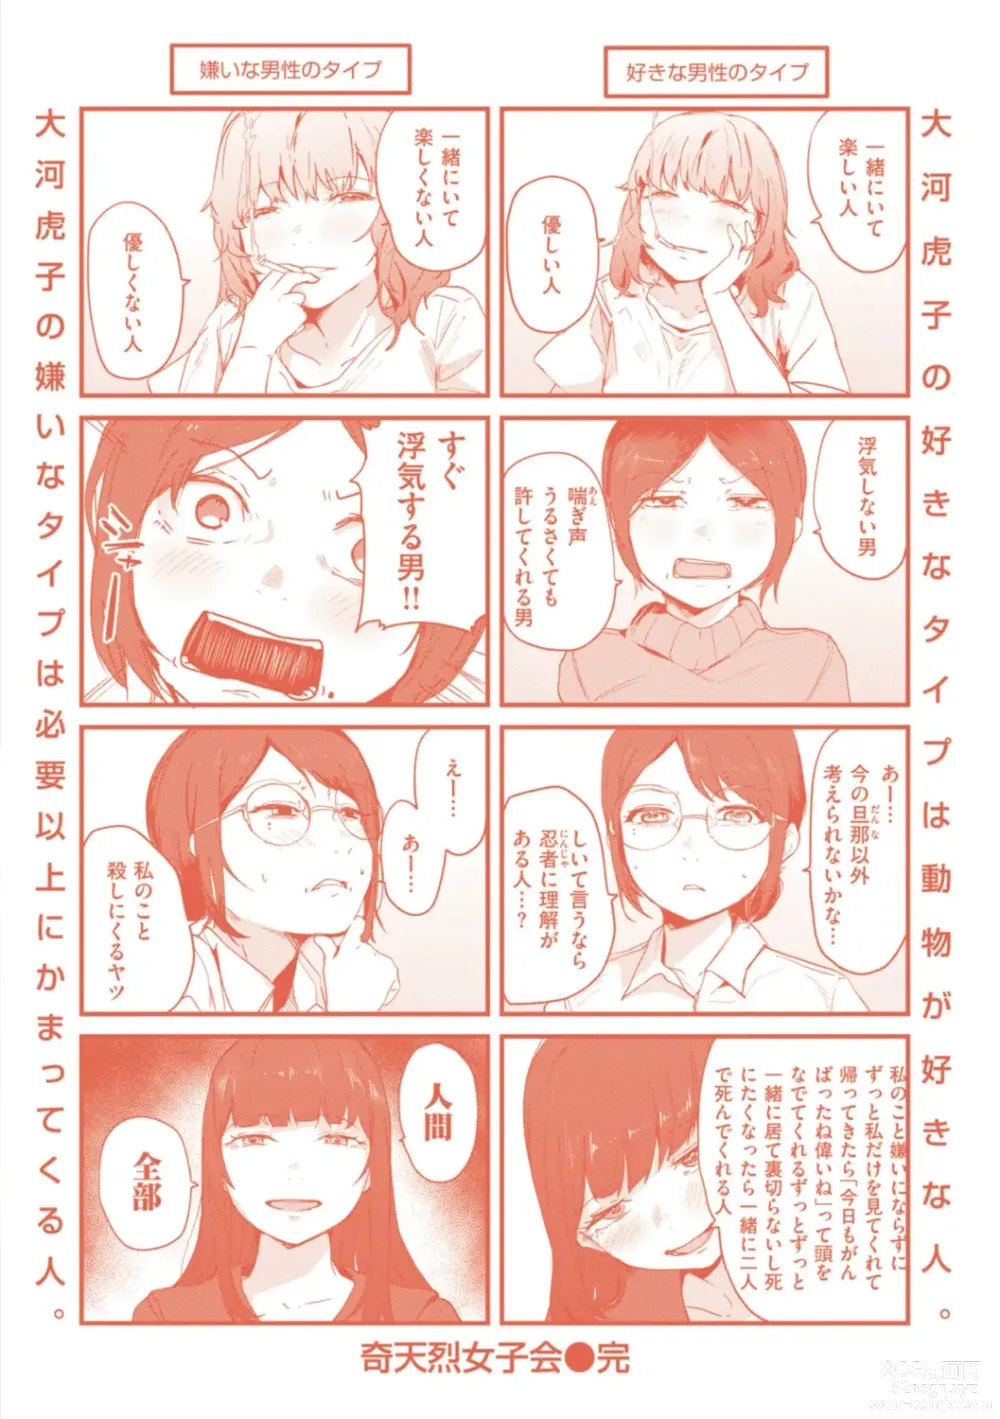 Page 175 of manga Kiteretsu Porno Zenshuu